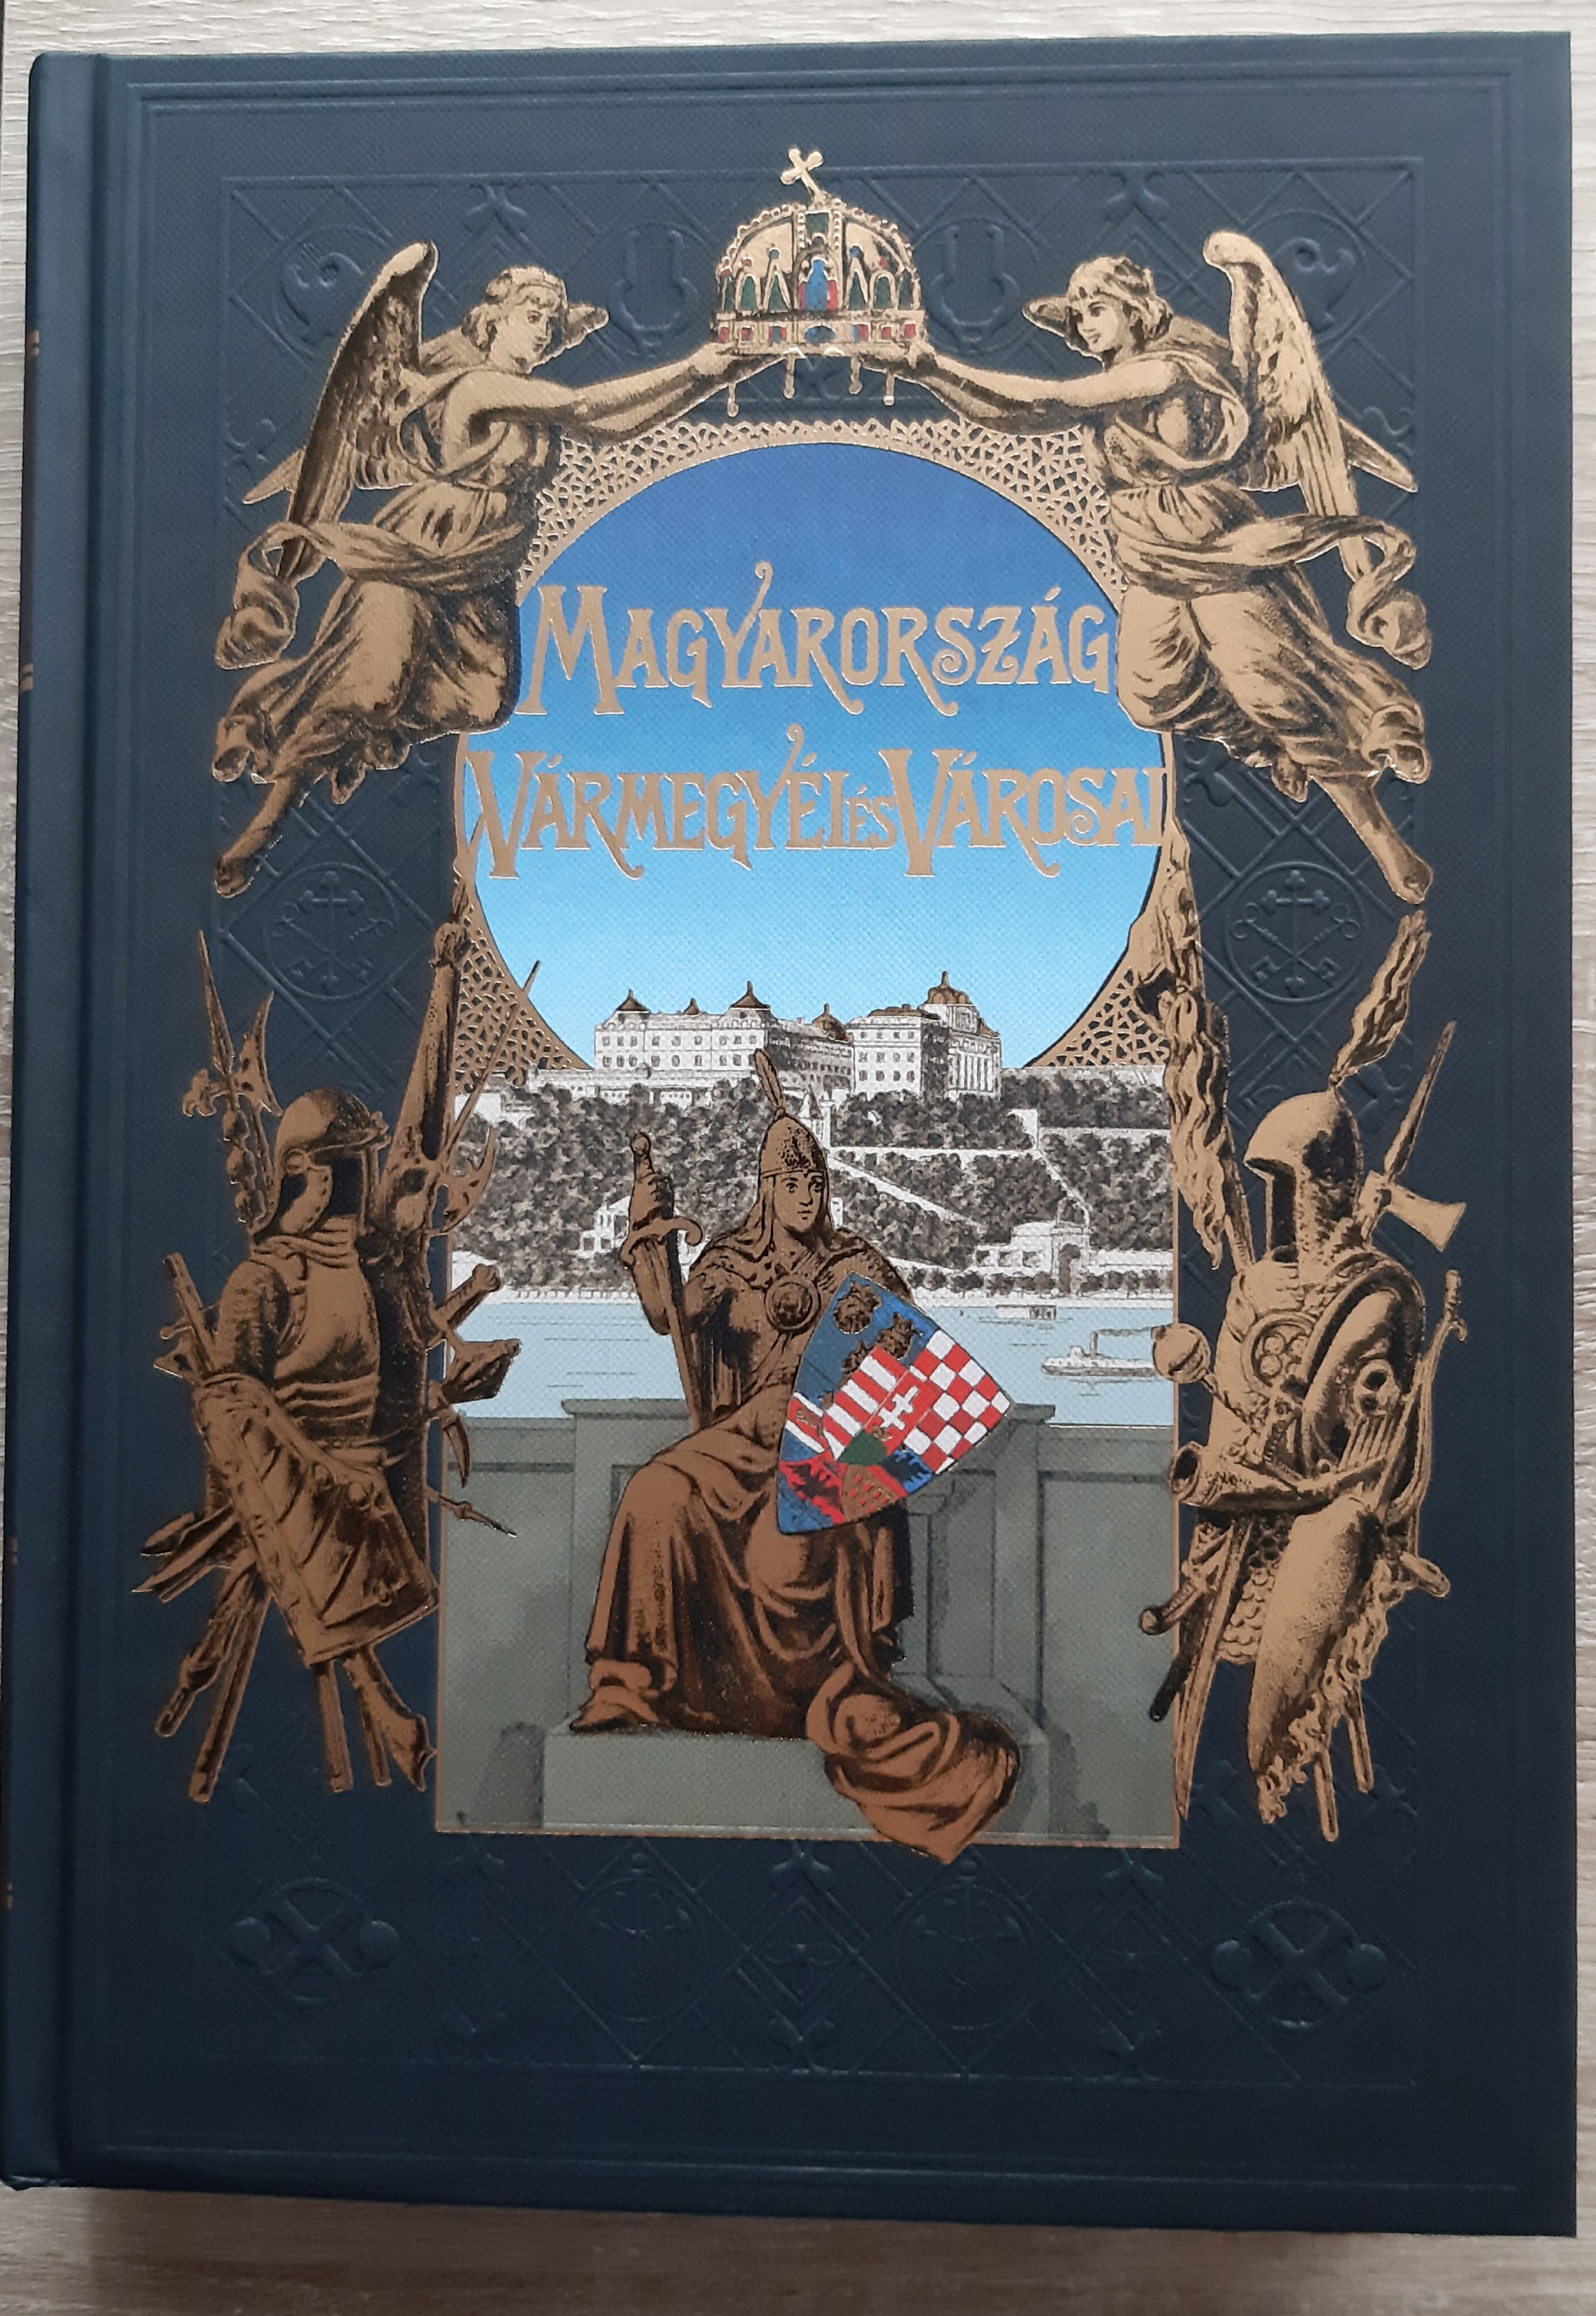 Magyarország vármegyéi és városai - Nyitra vármegye (Rippl-Rónai Múzeum RR-F)